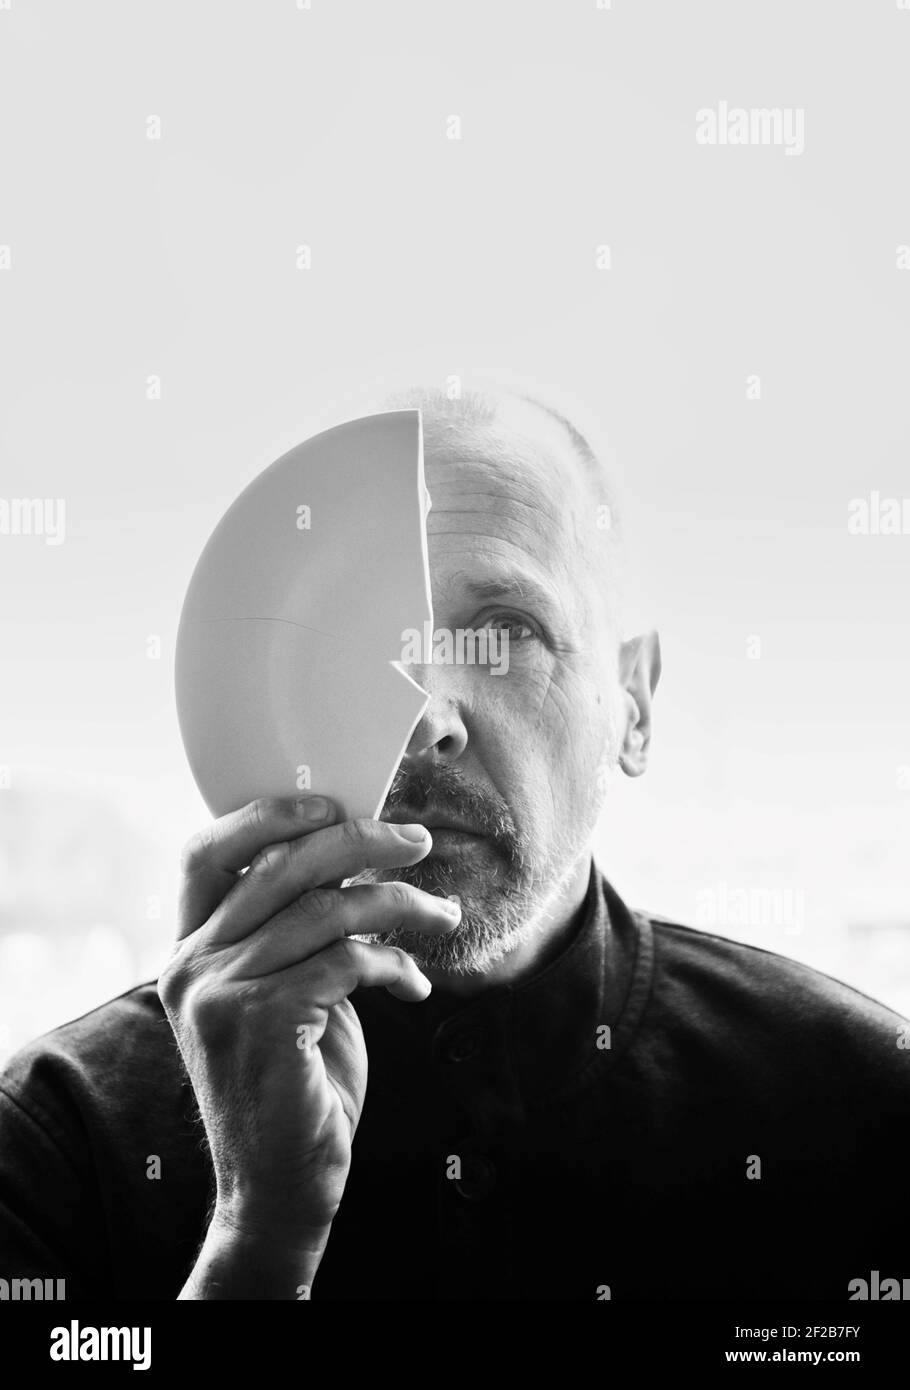 Immagine in bianco e nero di un uomo medio adulto che tiene un piatto rotto che copre metà del viso. Concetto di mistero, intrigo, curiosità Foto Stock